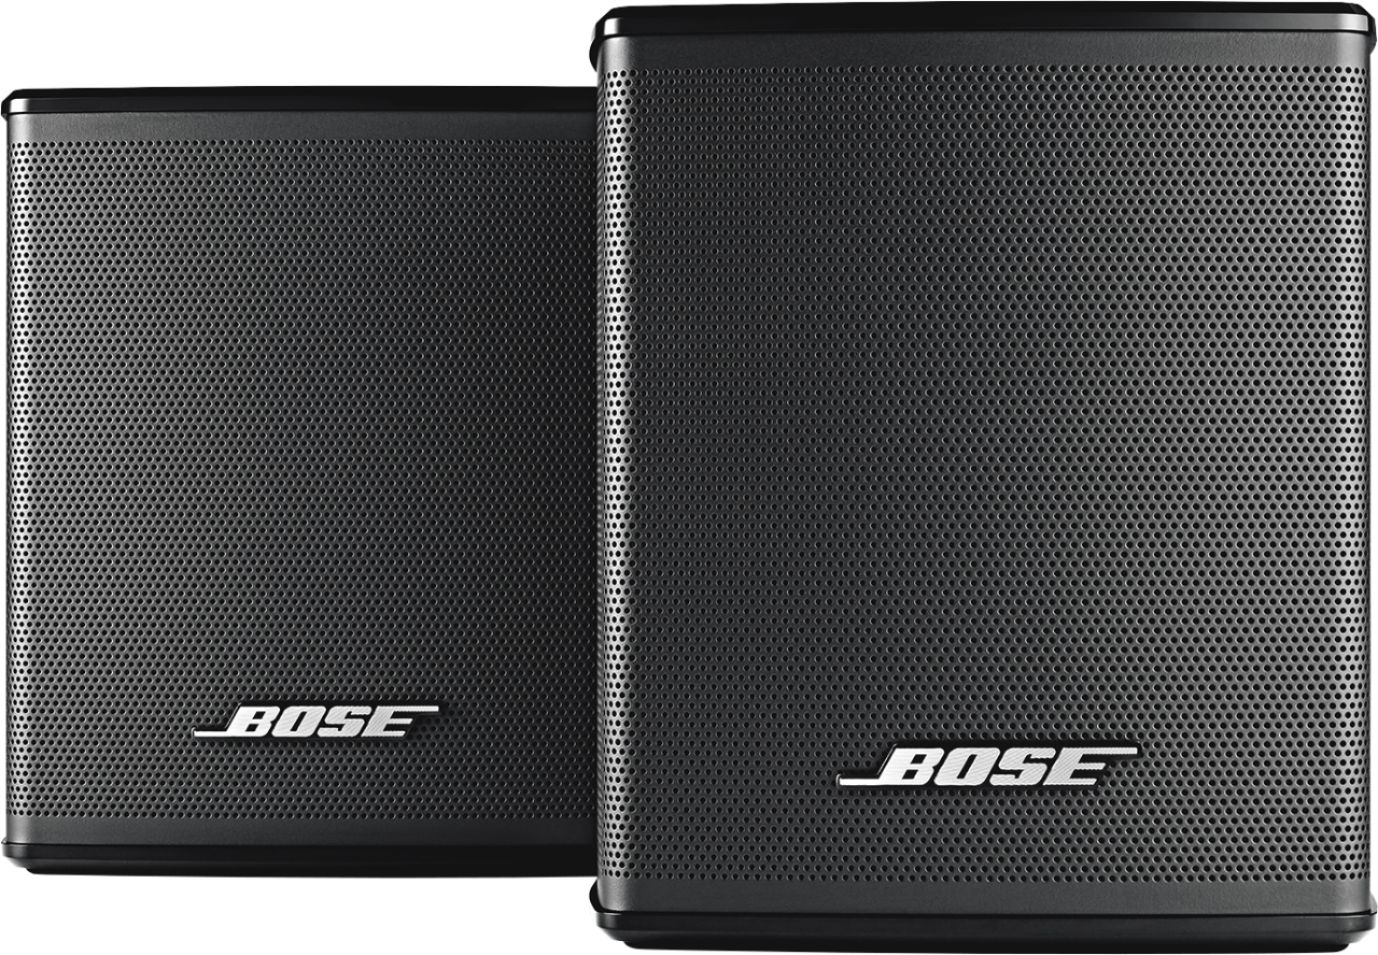 Eigen Vervolgen Verrijking Bose Surround Speakers 120-Watt Wireless Home Theater Speakers (Pair) Black  809281-1100 - Best Buy